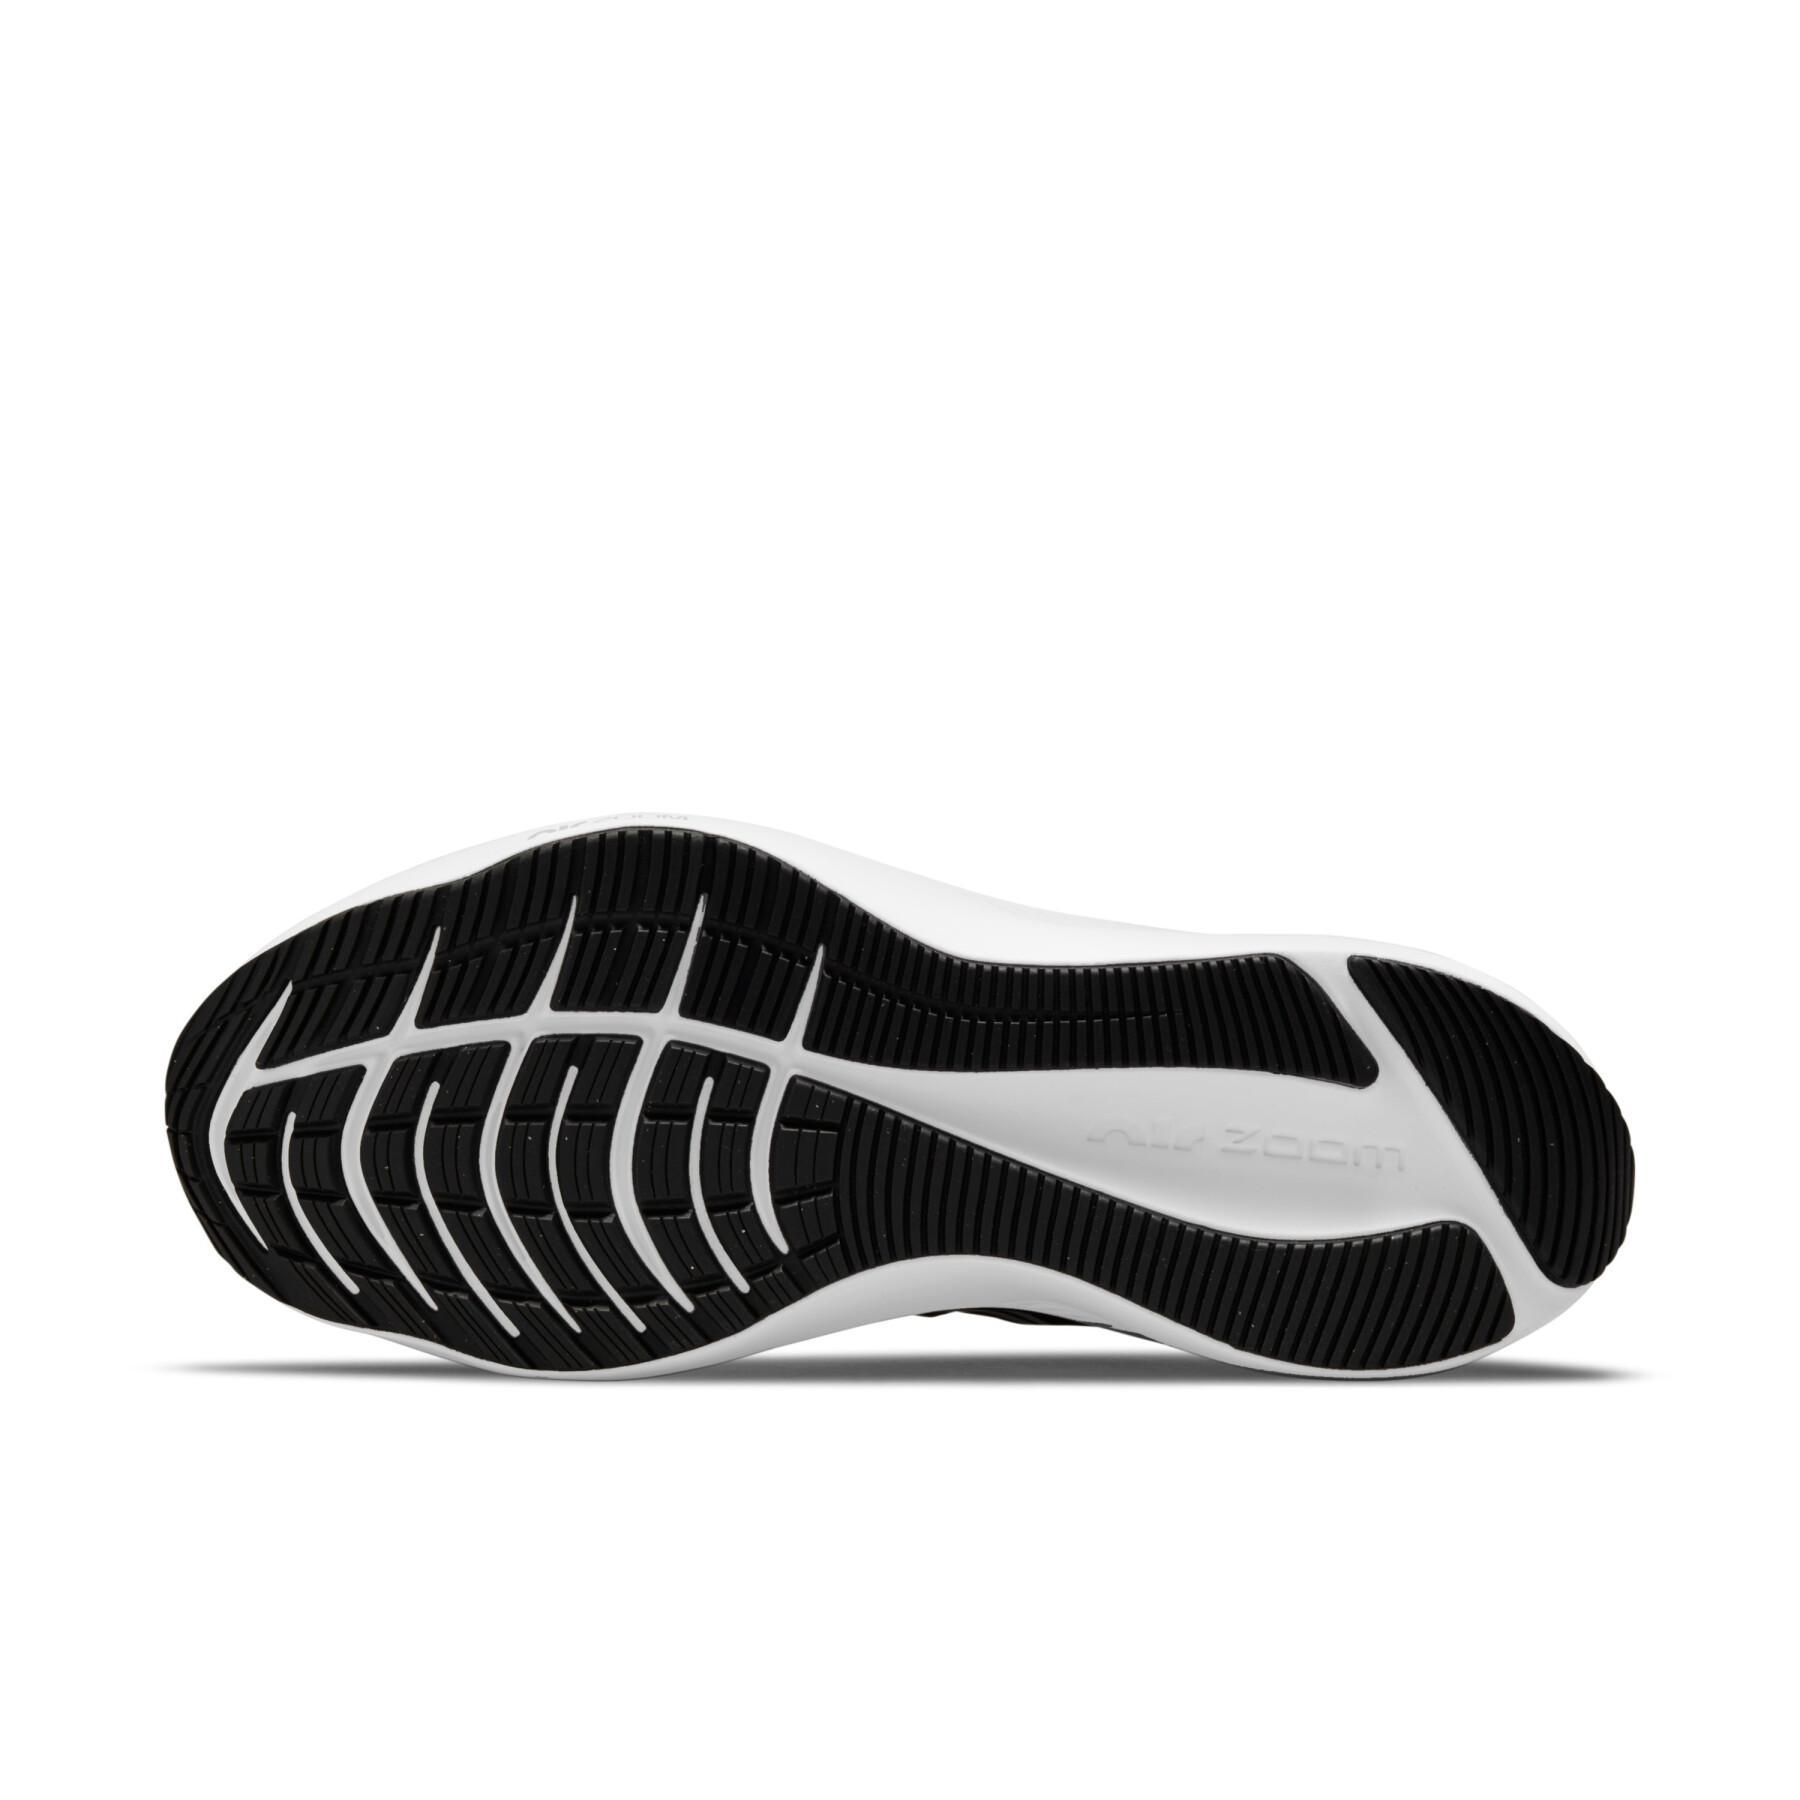 Women's shoes Nike Winflo 8